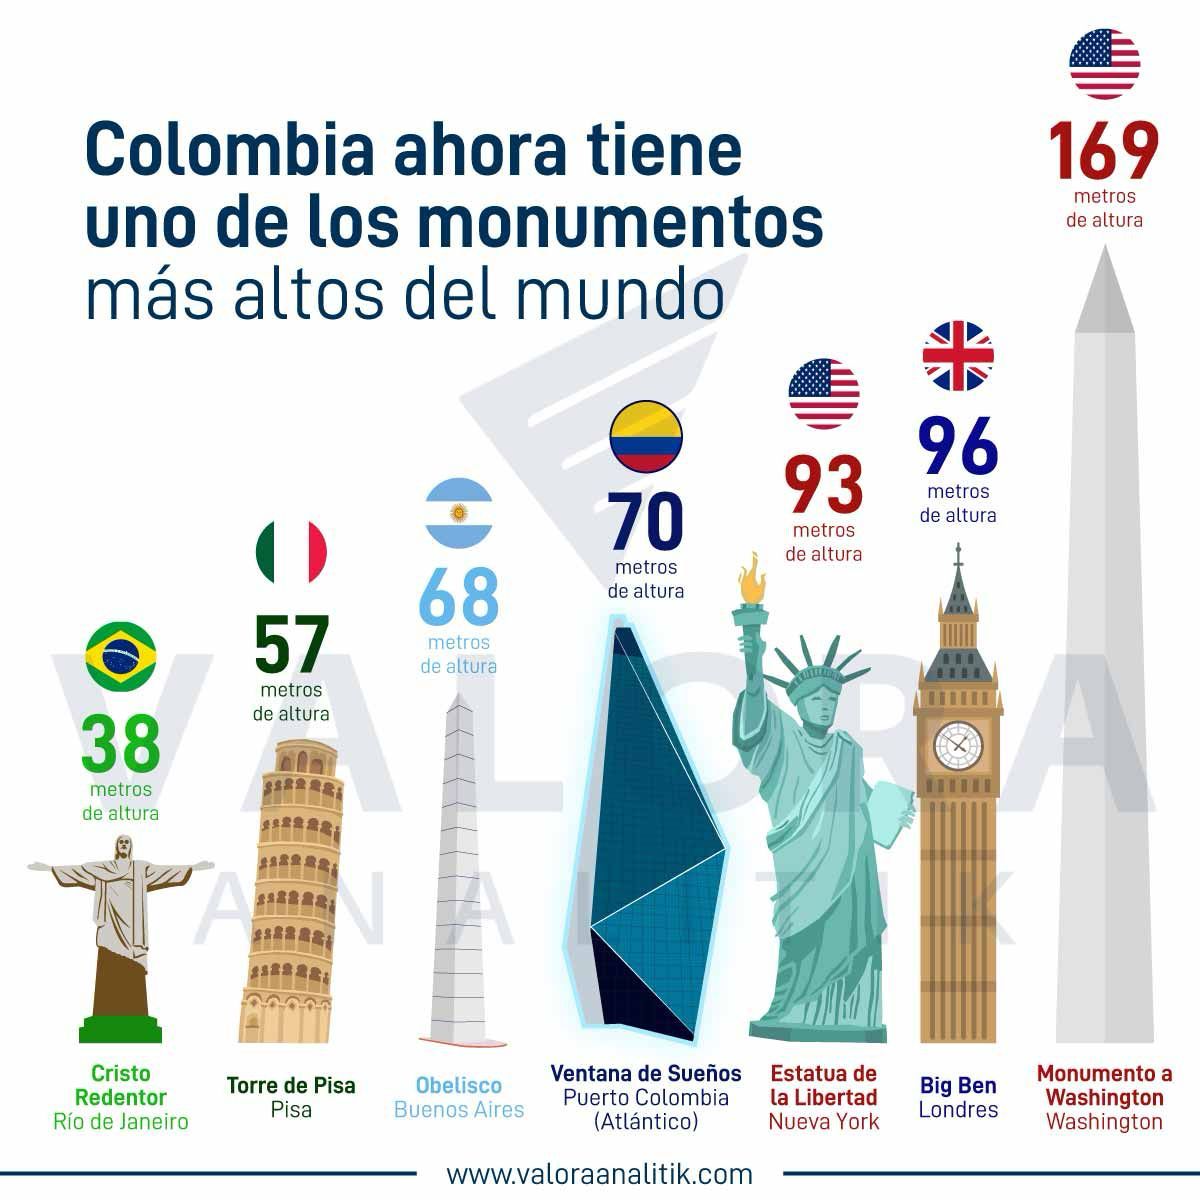 El ranking de los monumentos más altos del mundo en los que aparece Ventana de Sueños.